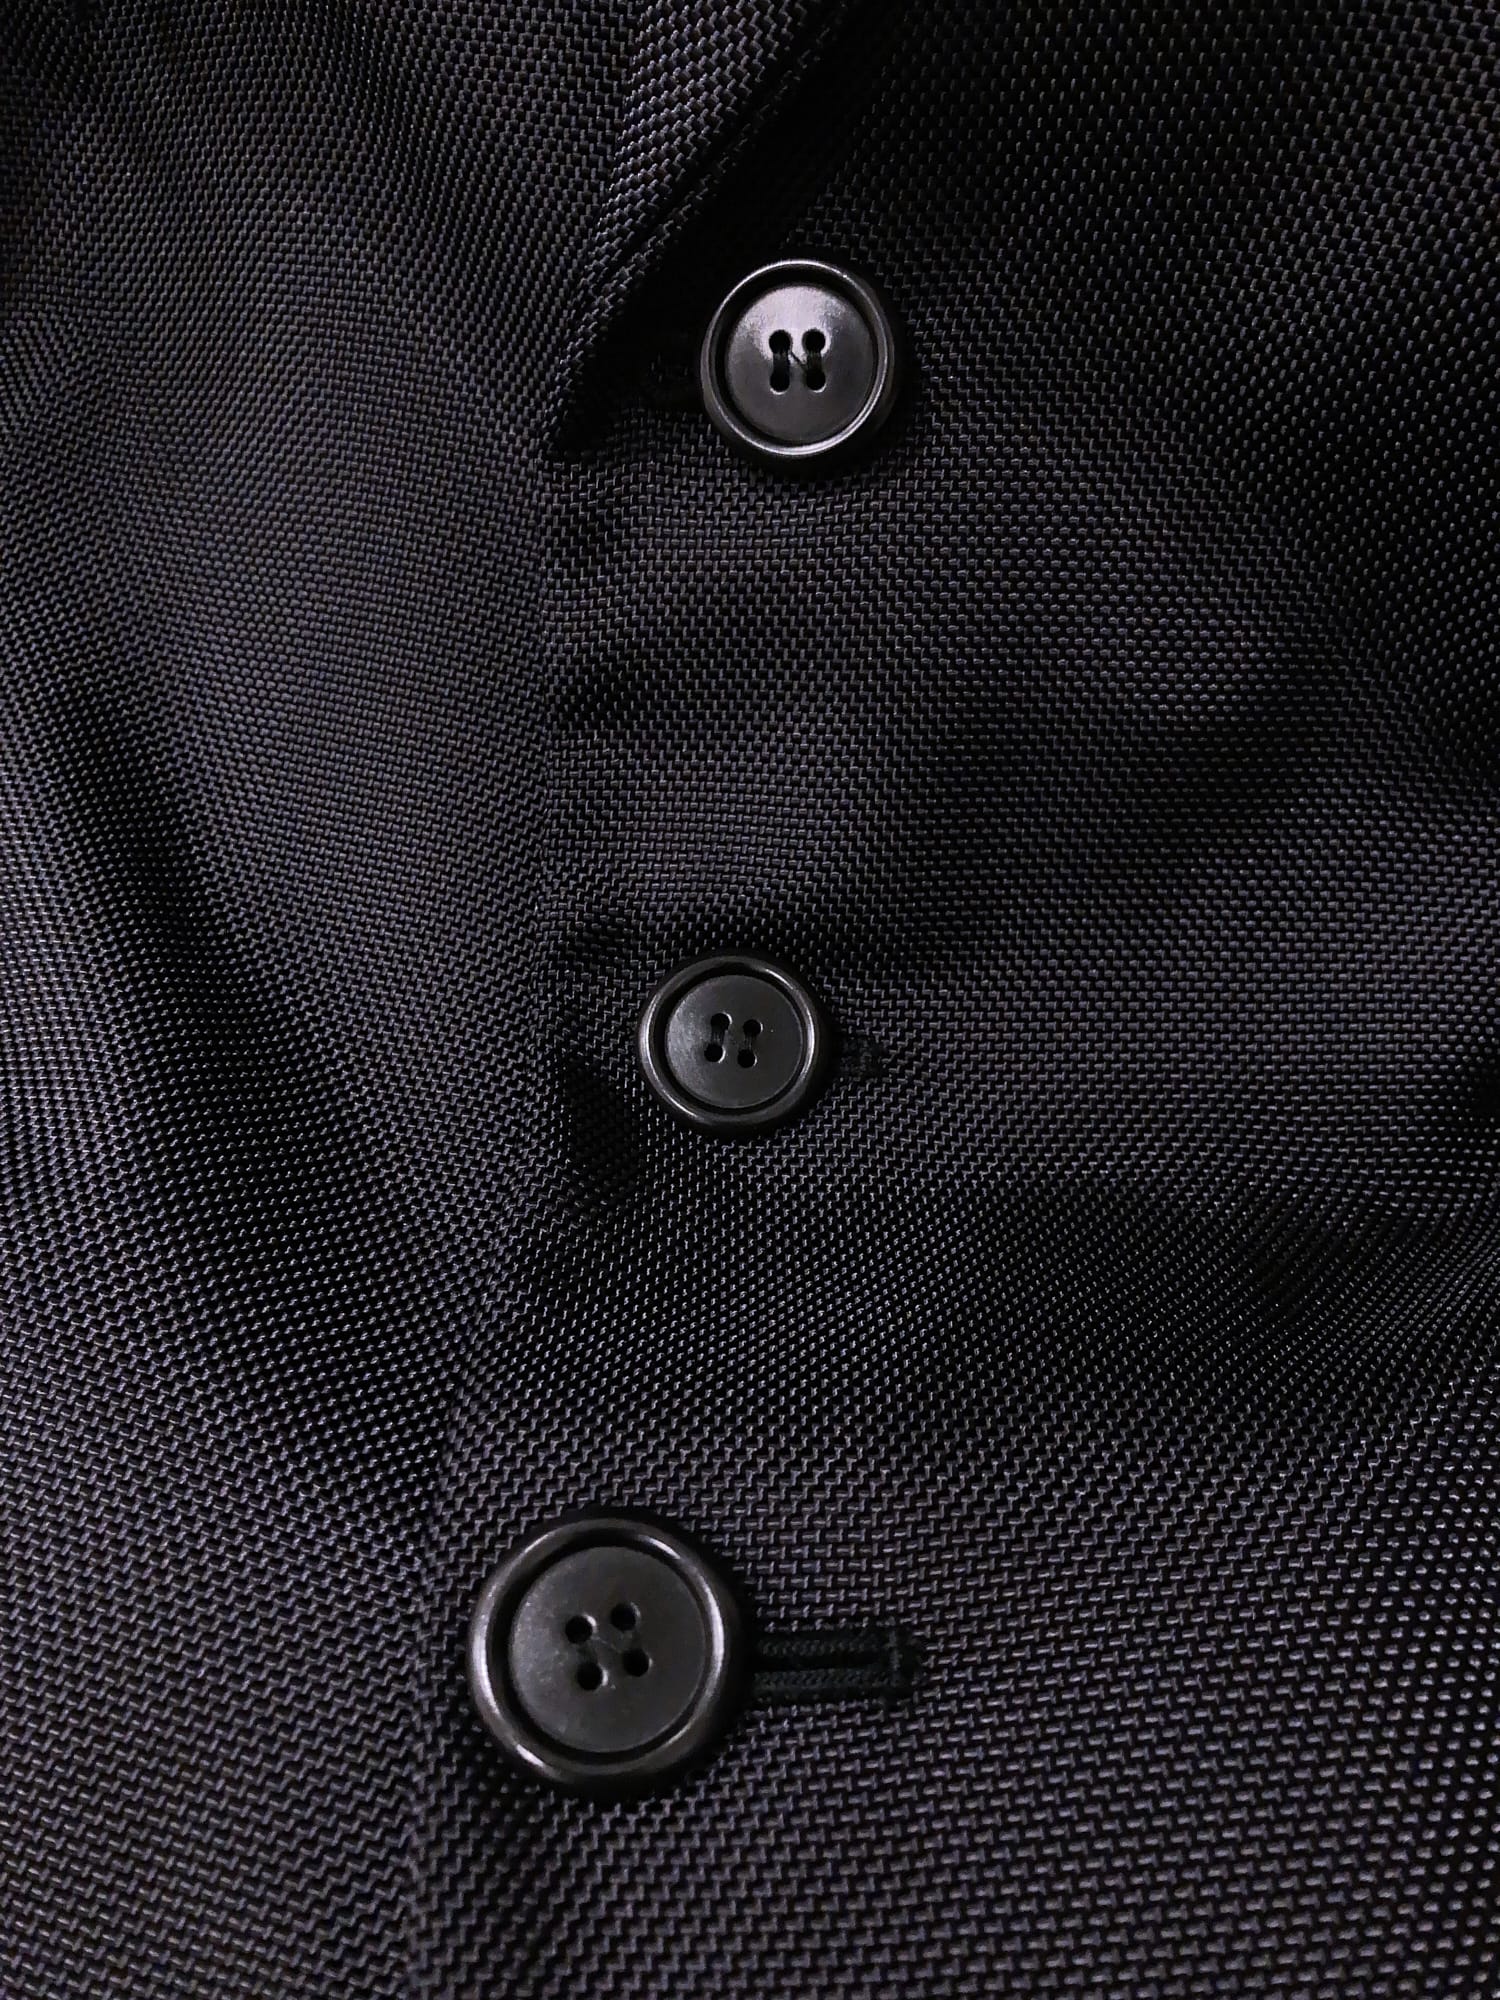 Dirk Bikkembergs Hommes Pour La Femme 1990s black ballistic nylon trouser suit